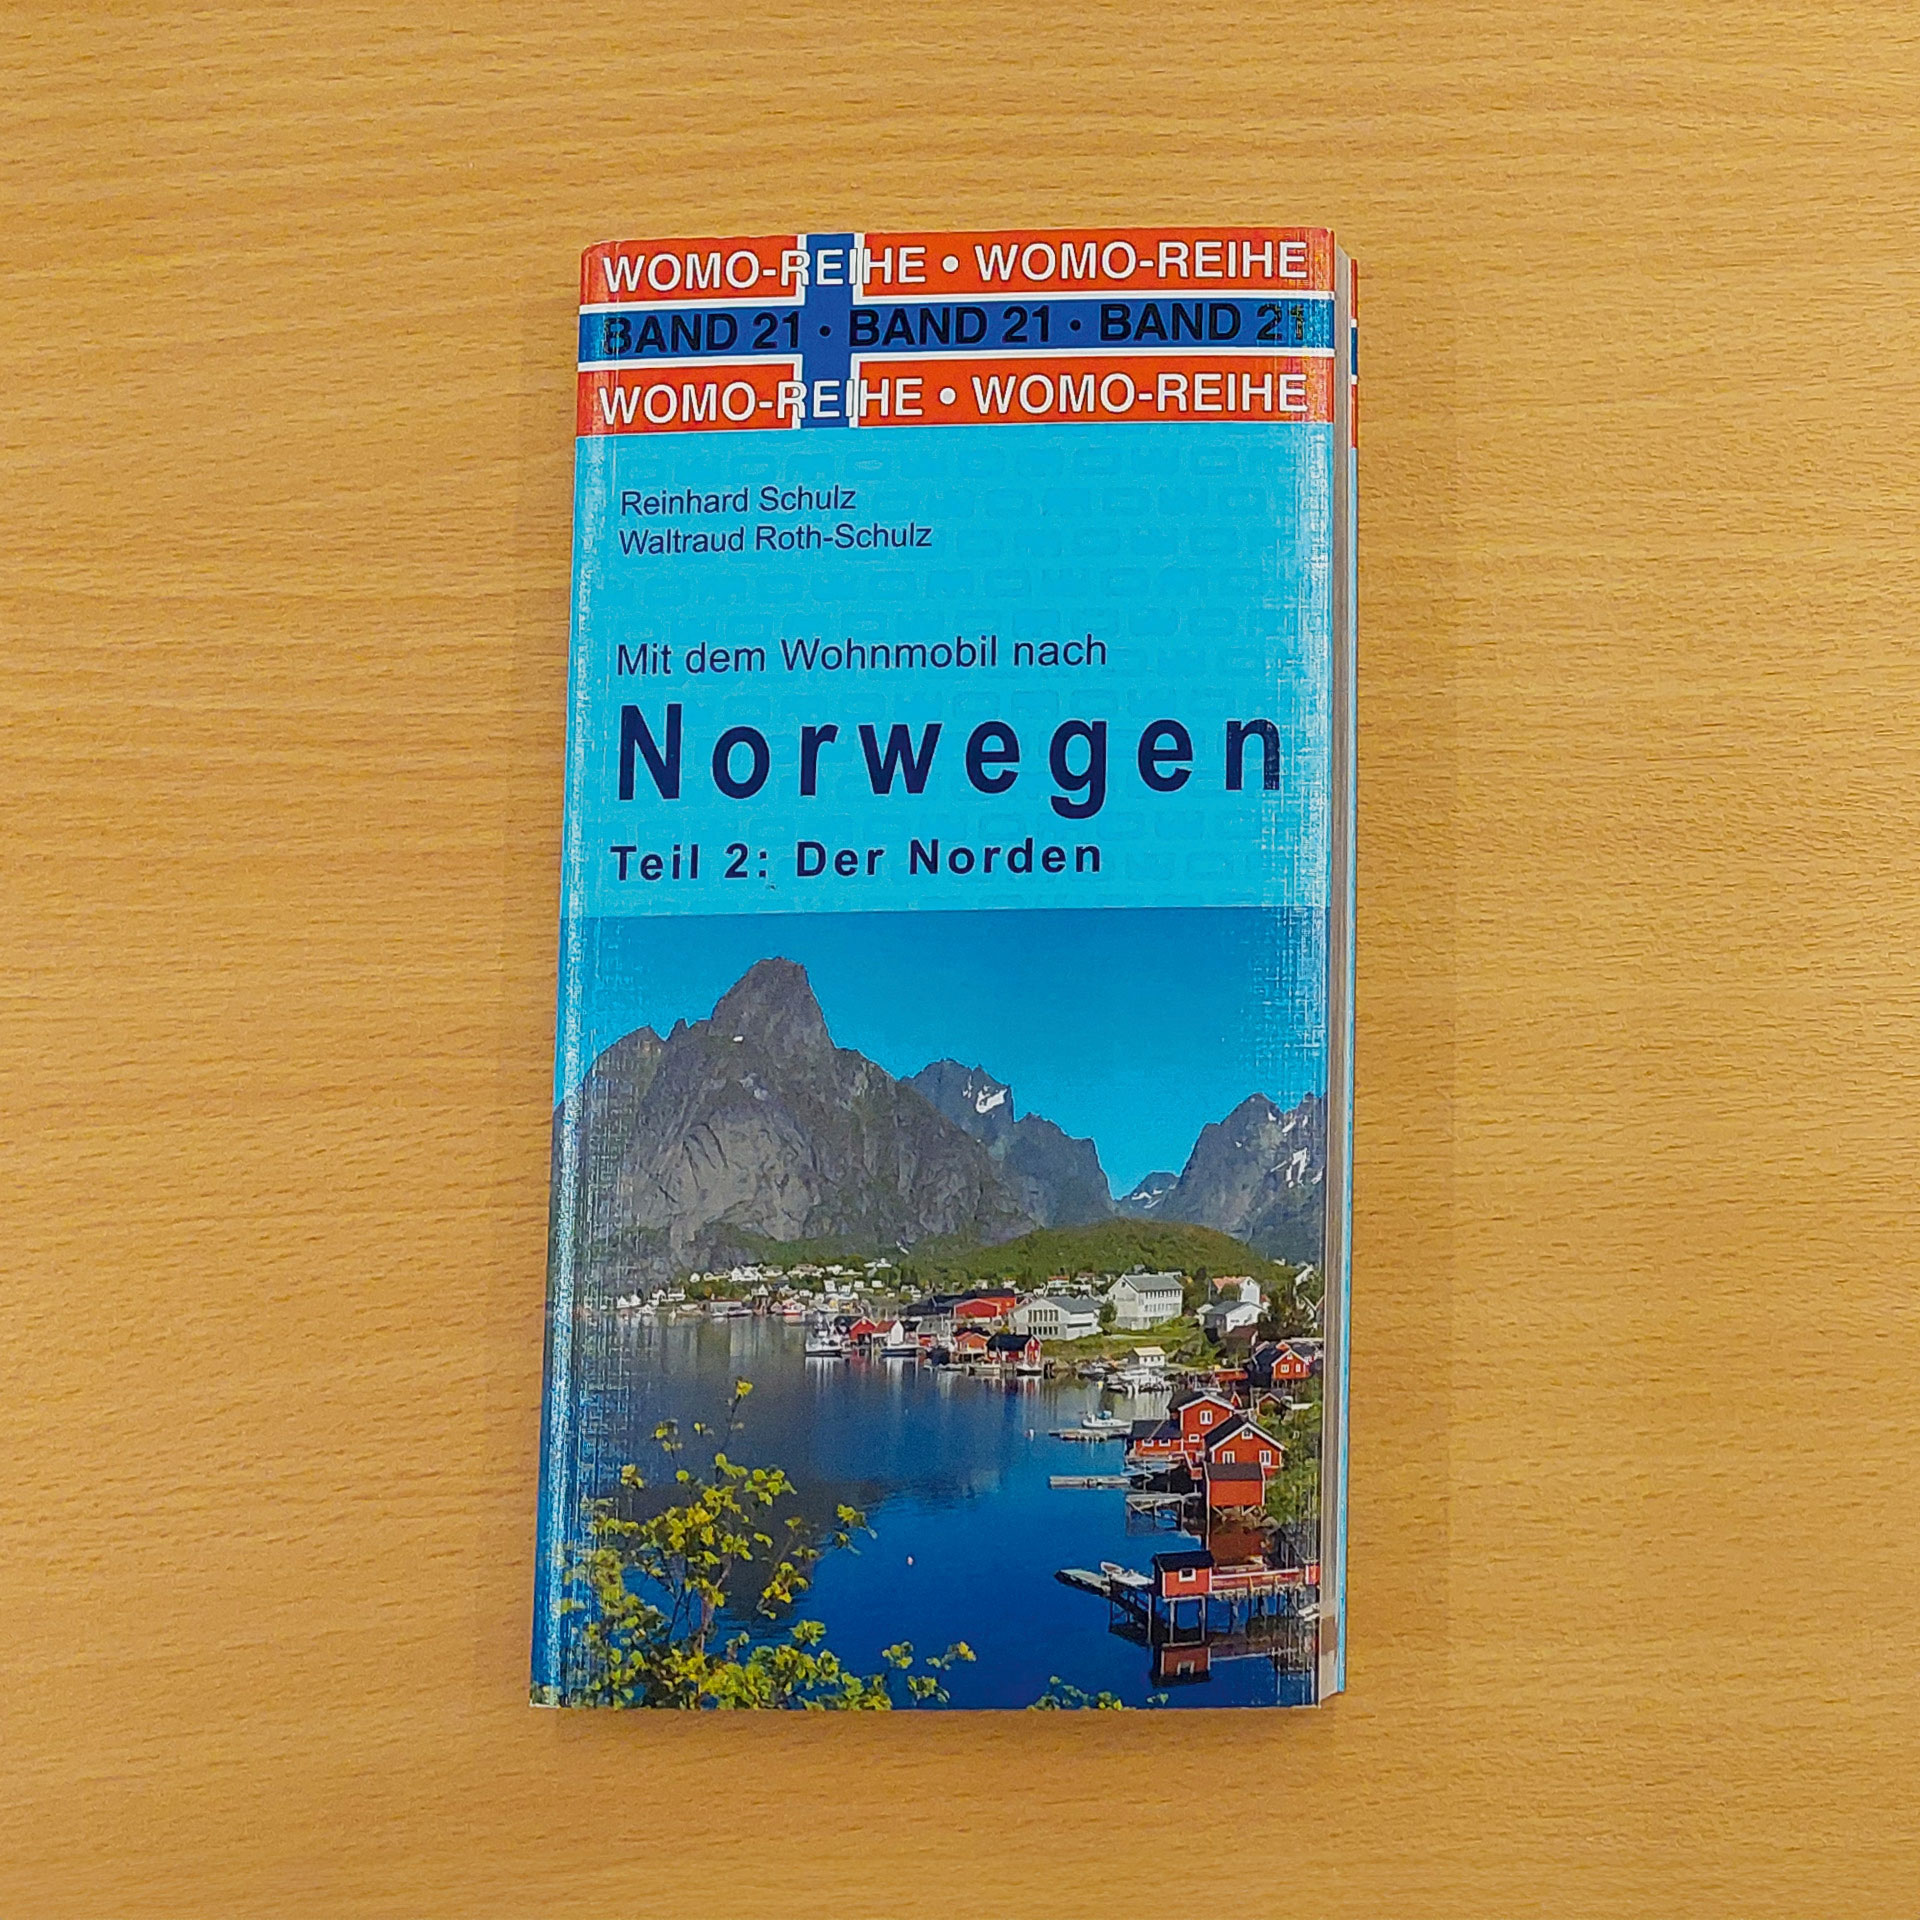 21: Mit dem Wohnmobil nach Nord-Norwegen  